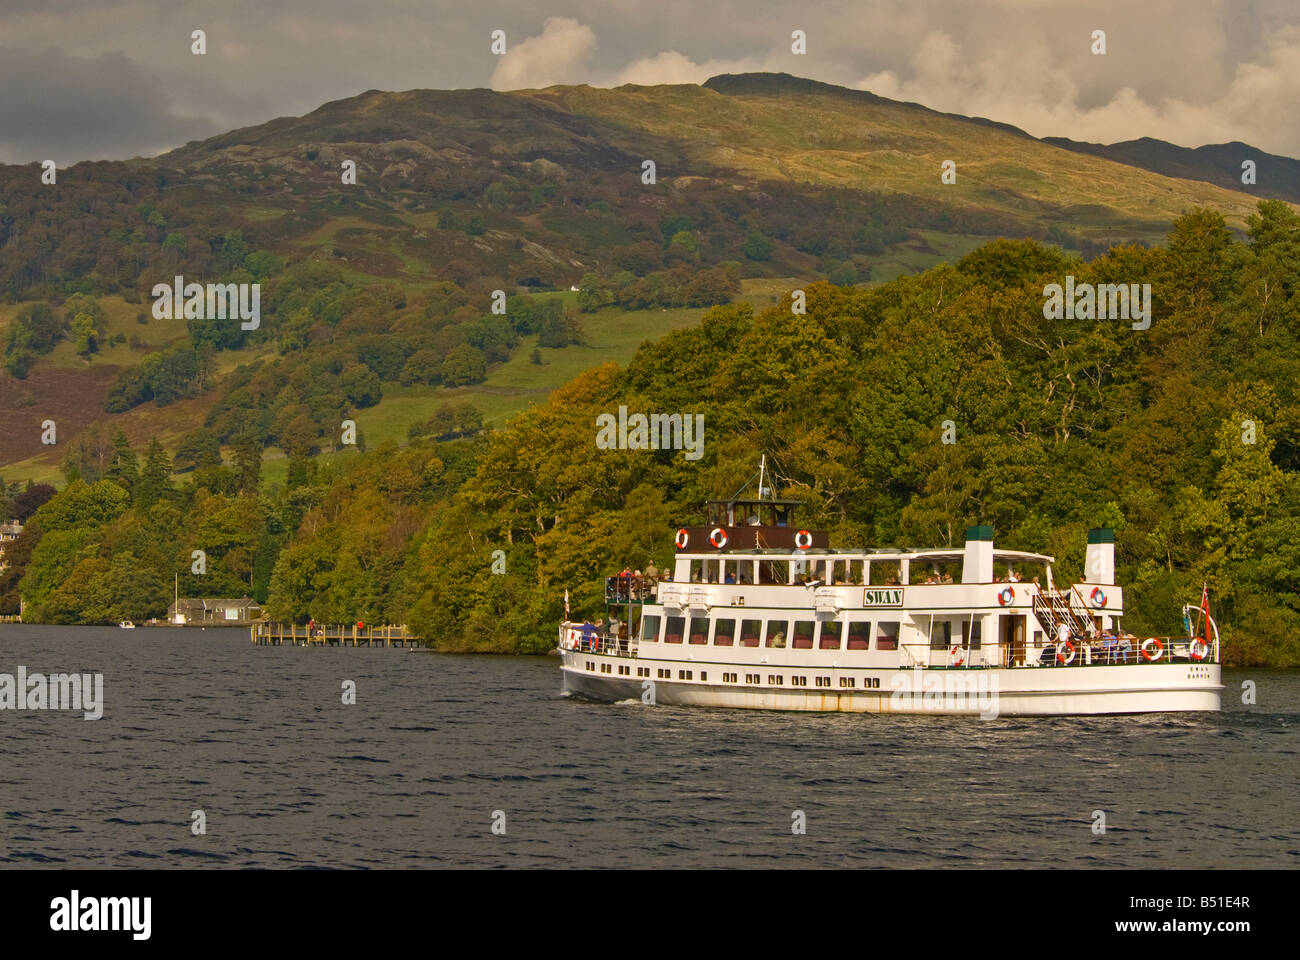 Dampfer Tour Boottouristen Lake Windermere Lake District Cumbria UK Großbritannien fallen Herbst, die Blätter verfärben Stockfoto